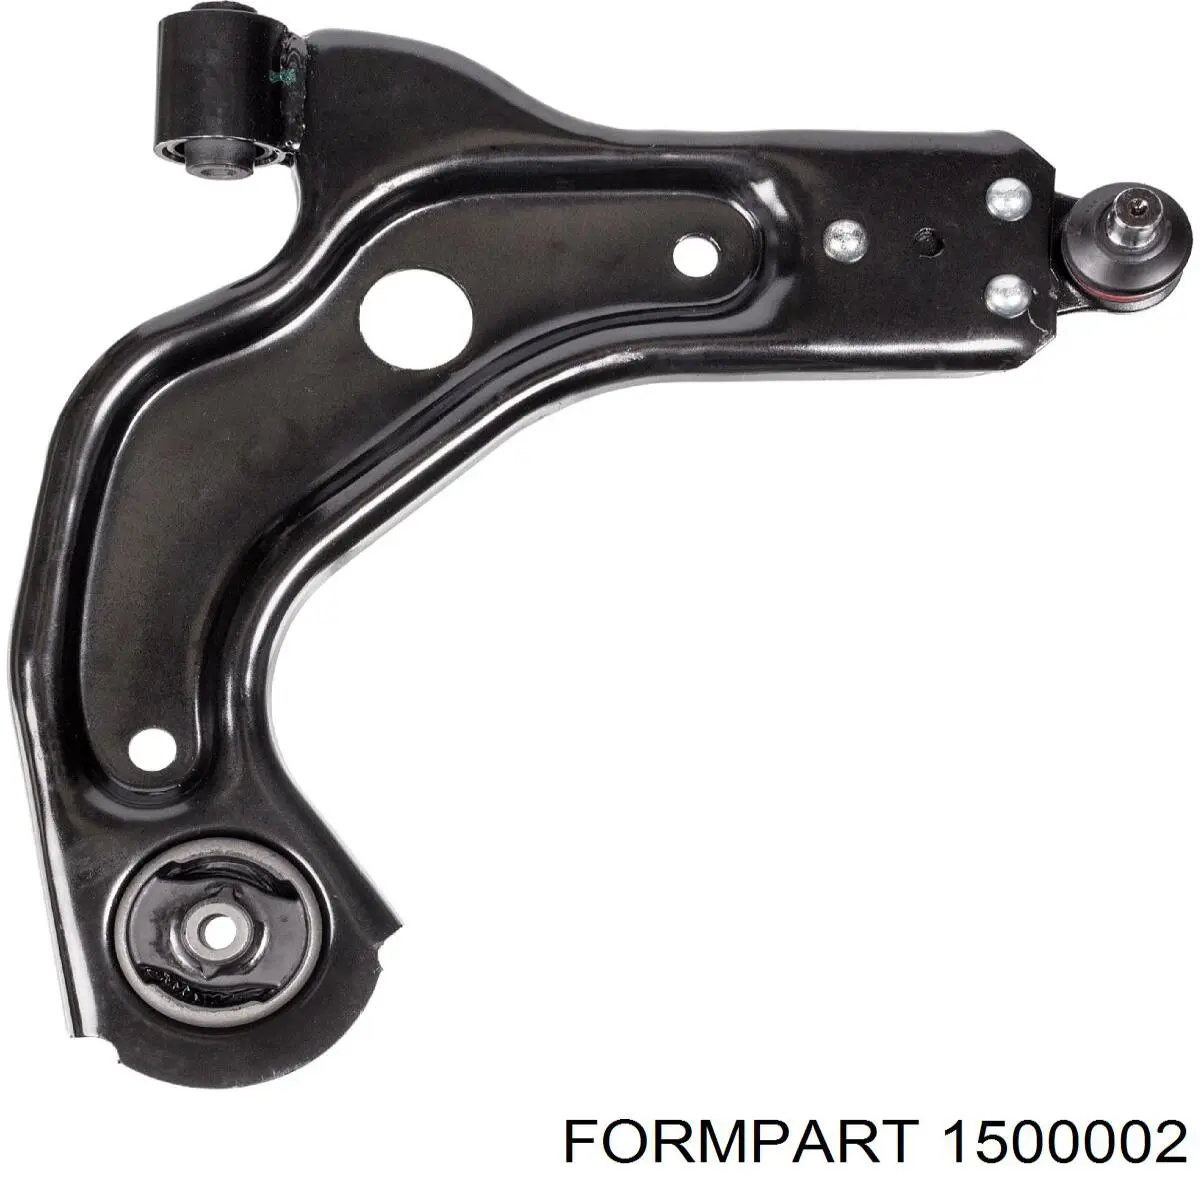 1500002 Formpart/Otoform silentblock de suspensión delantero inferior